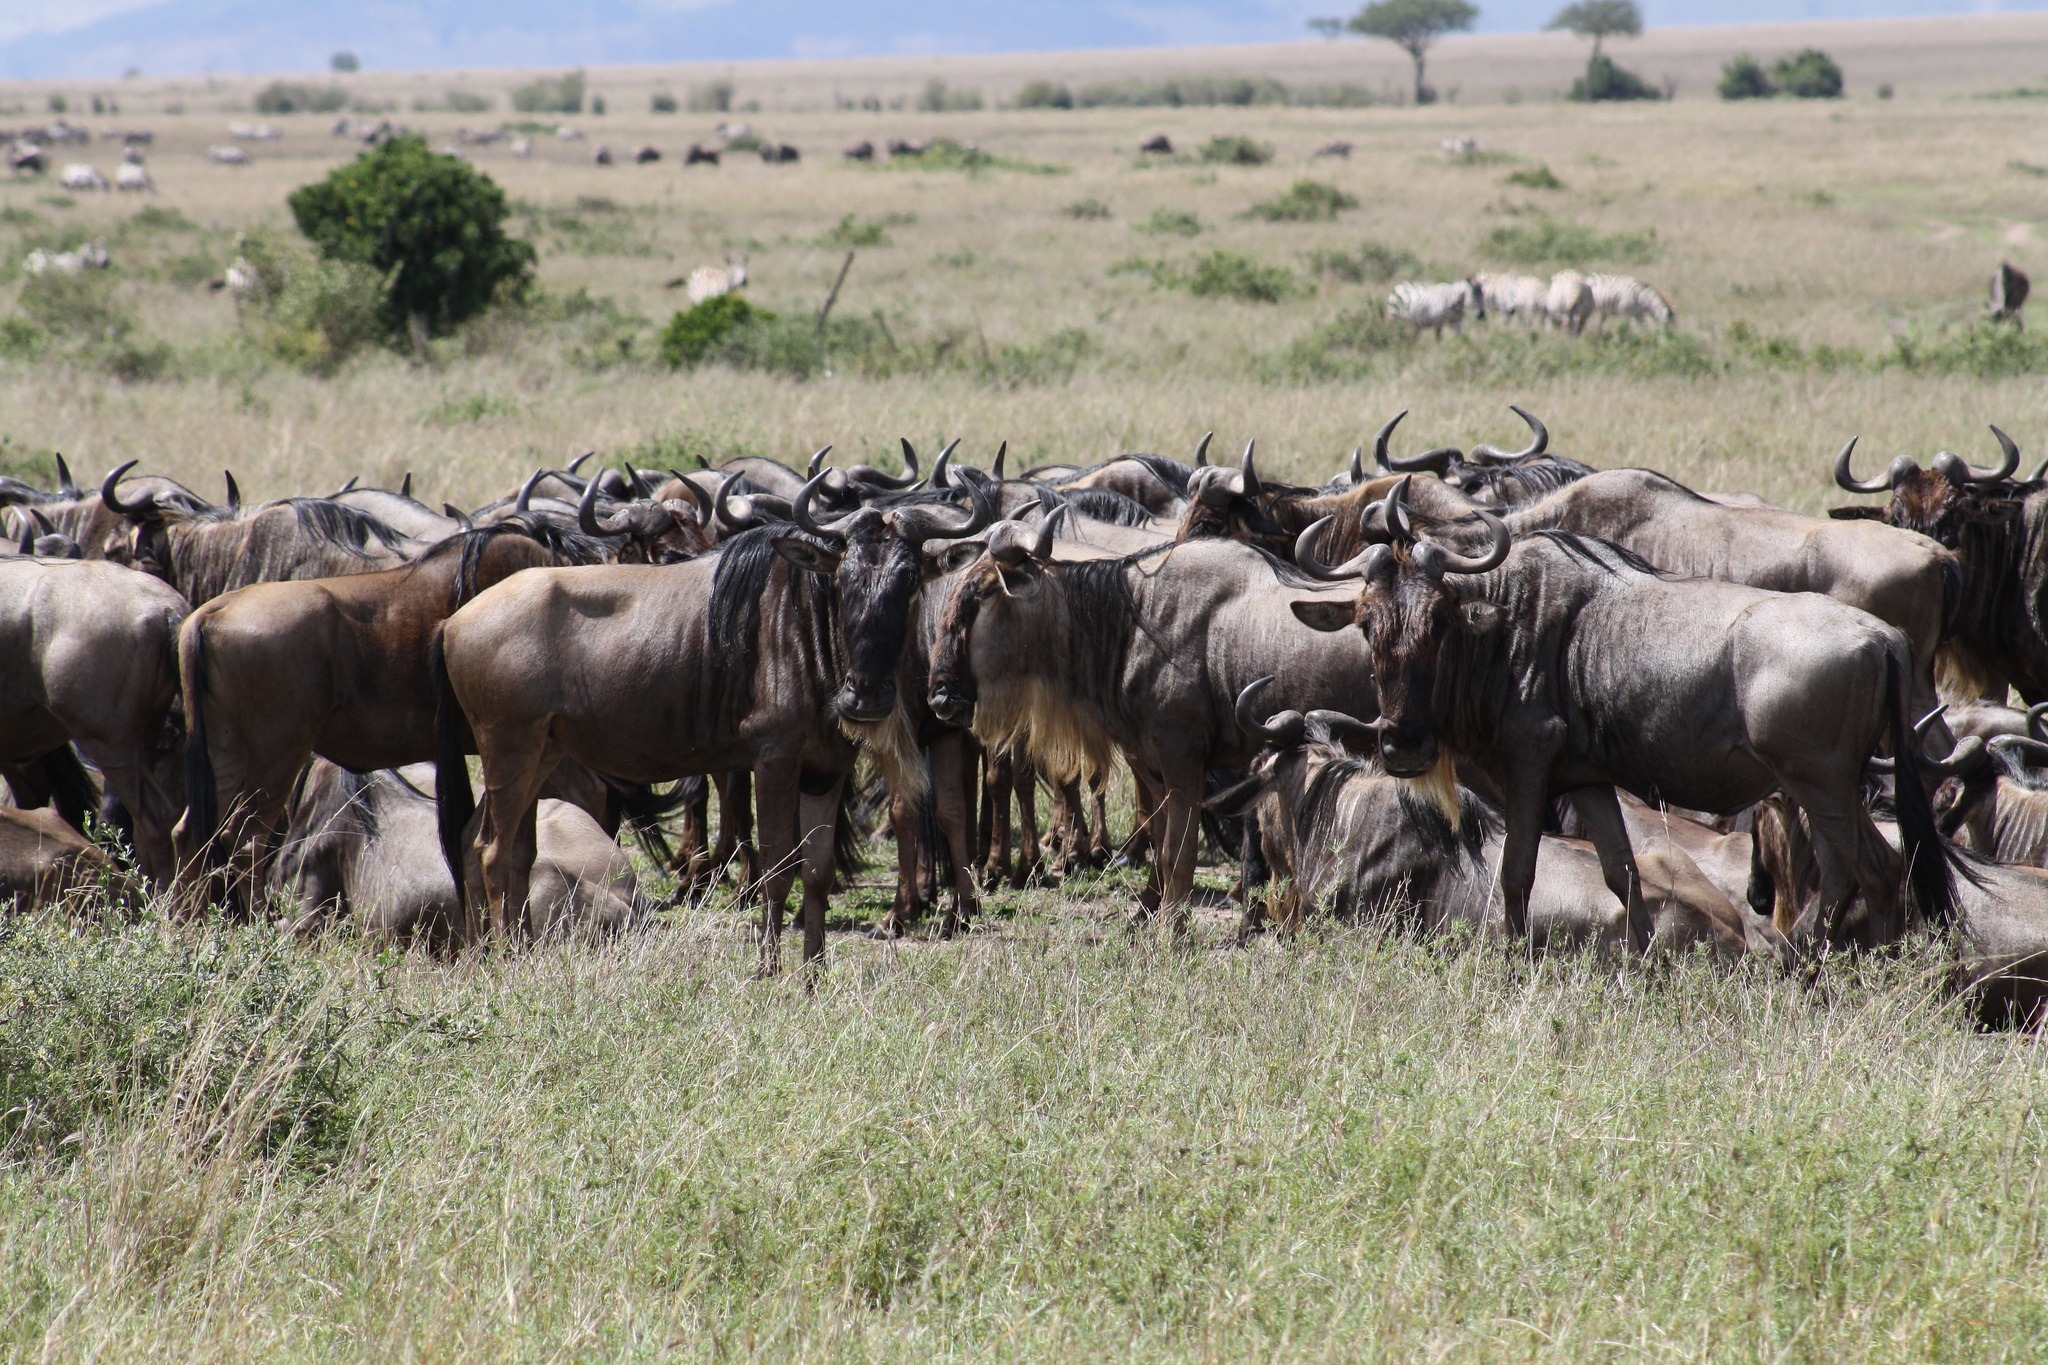 Wildebeest migration